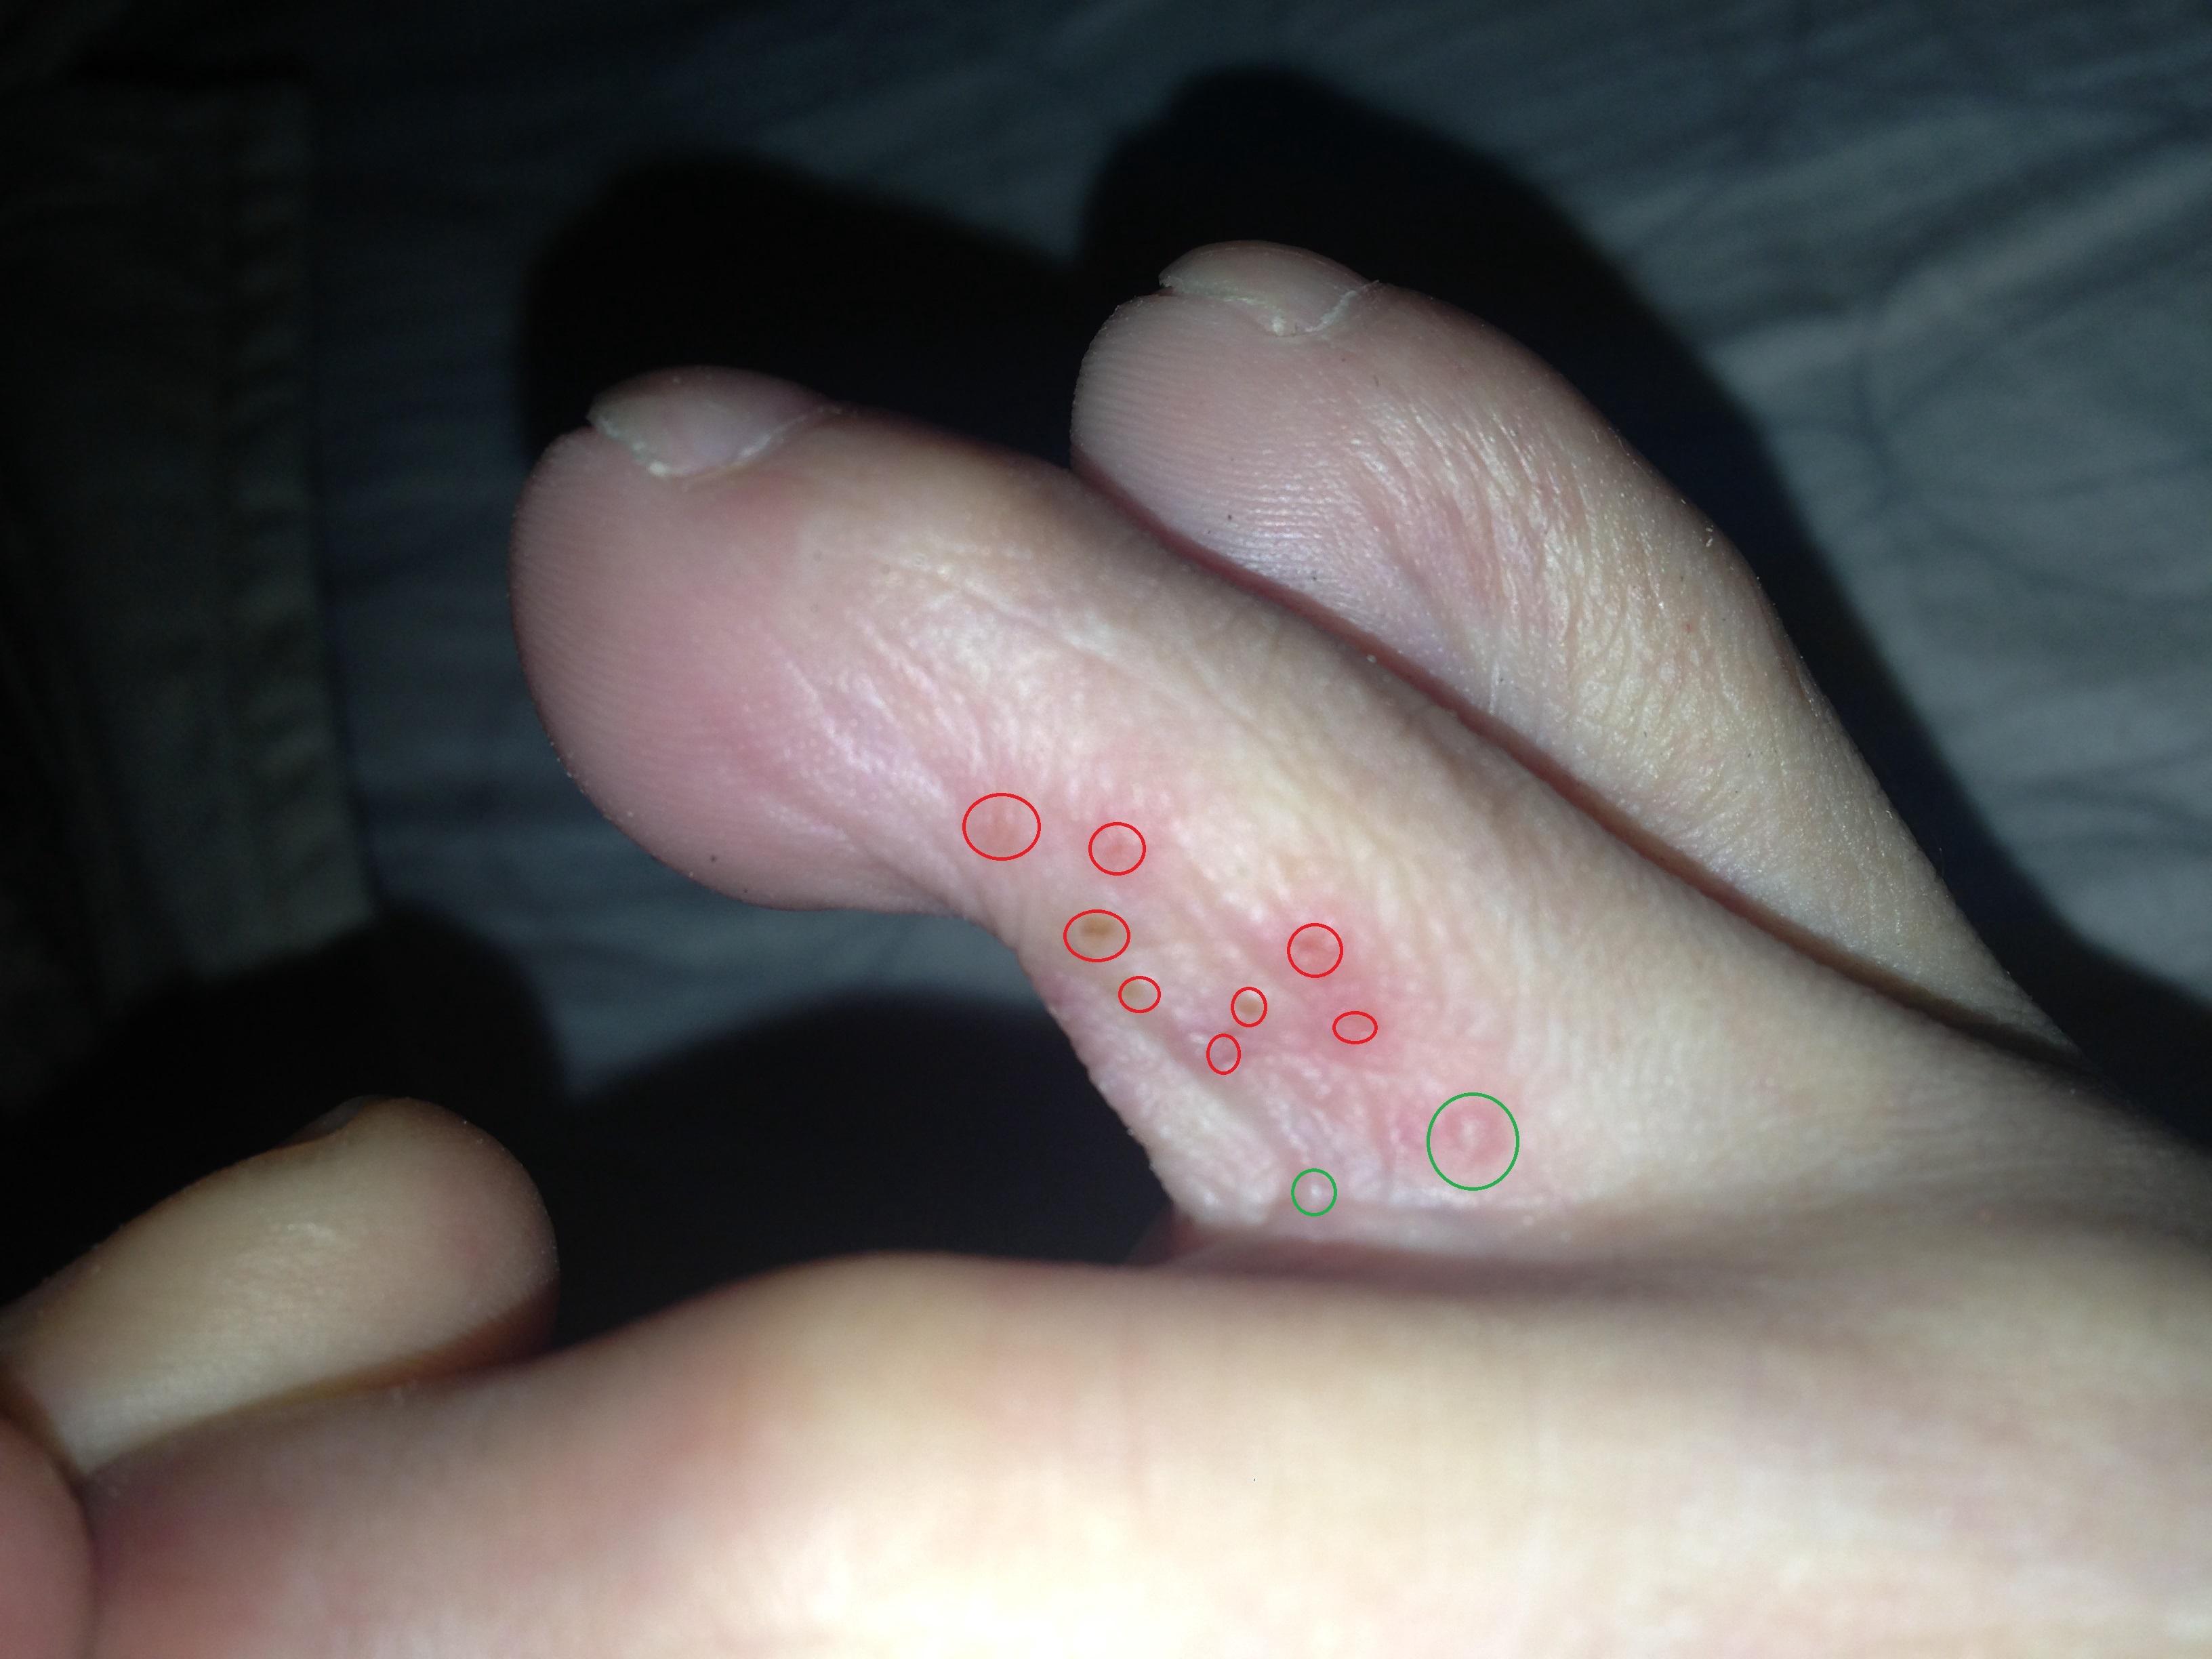 请诊断脚趾跟脚趾之间很多粒小水泡